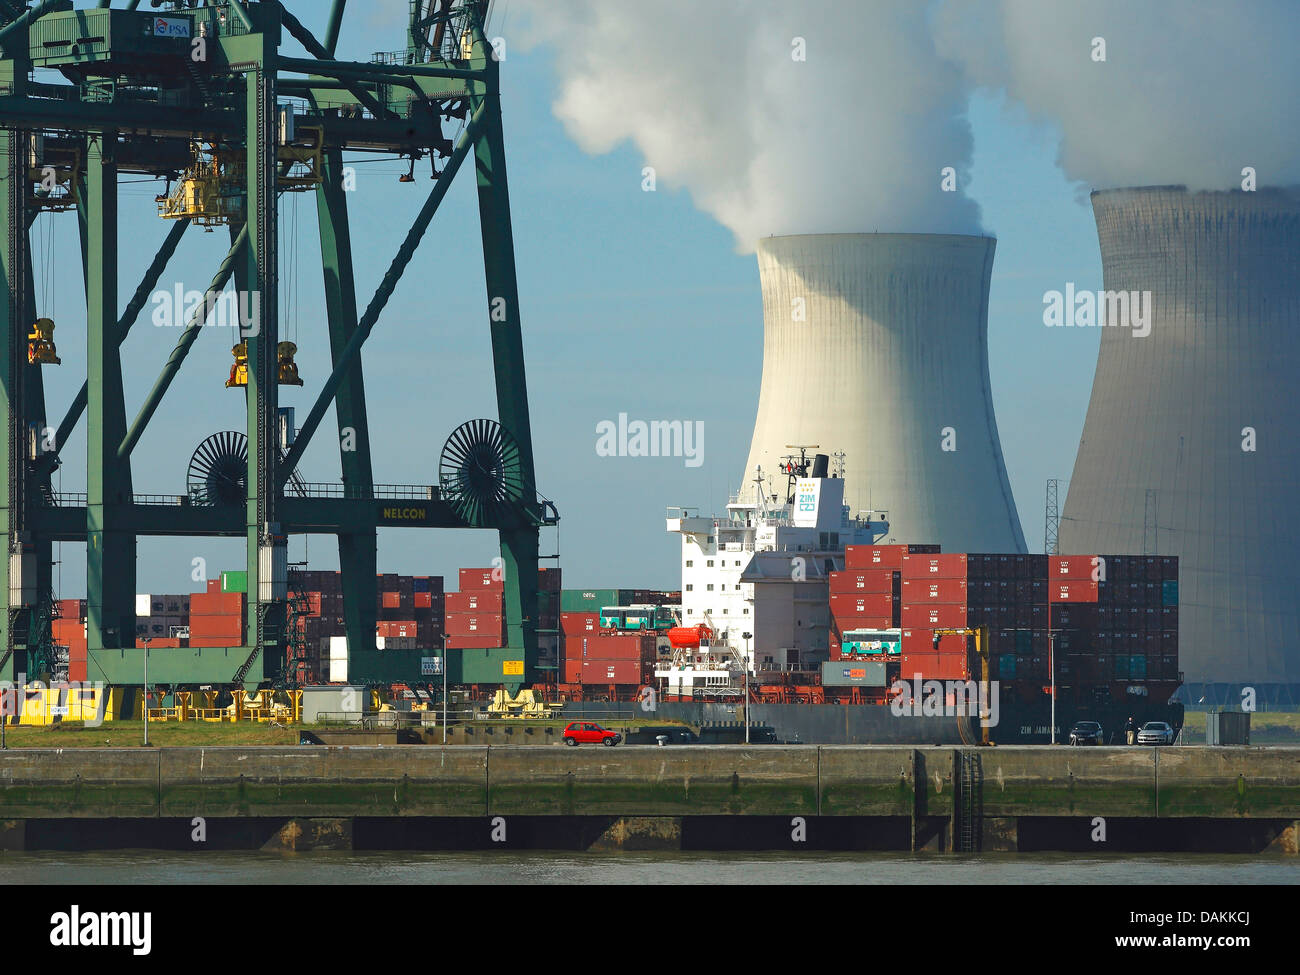 Buque de carga en la parte delantera de las torres de enfriamiento de una planta de energía nuclear, Bélgica, Amberes Foto de stock